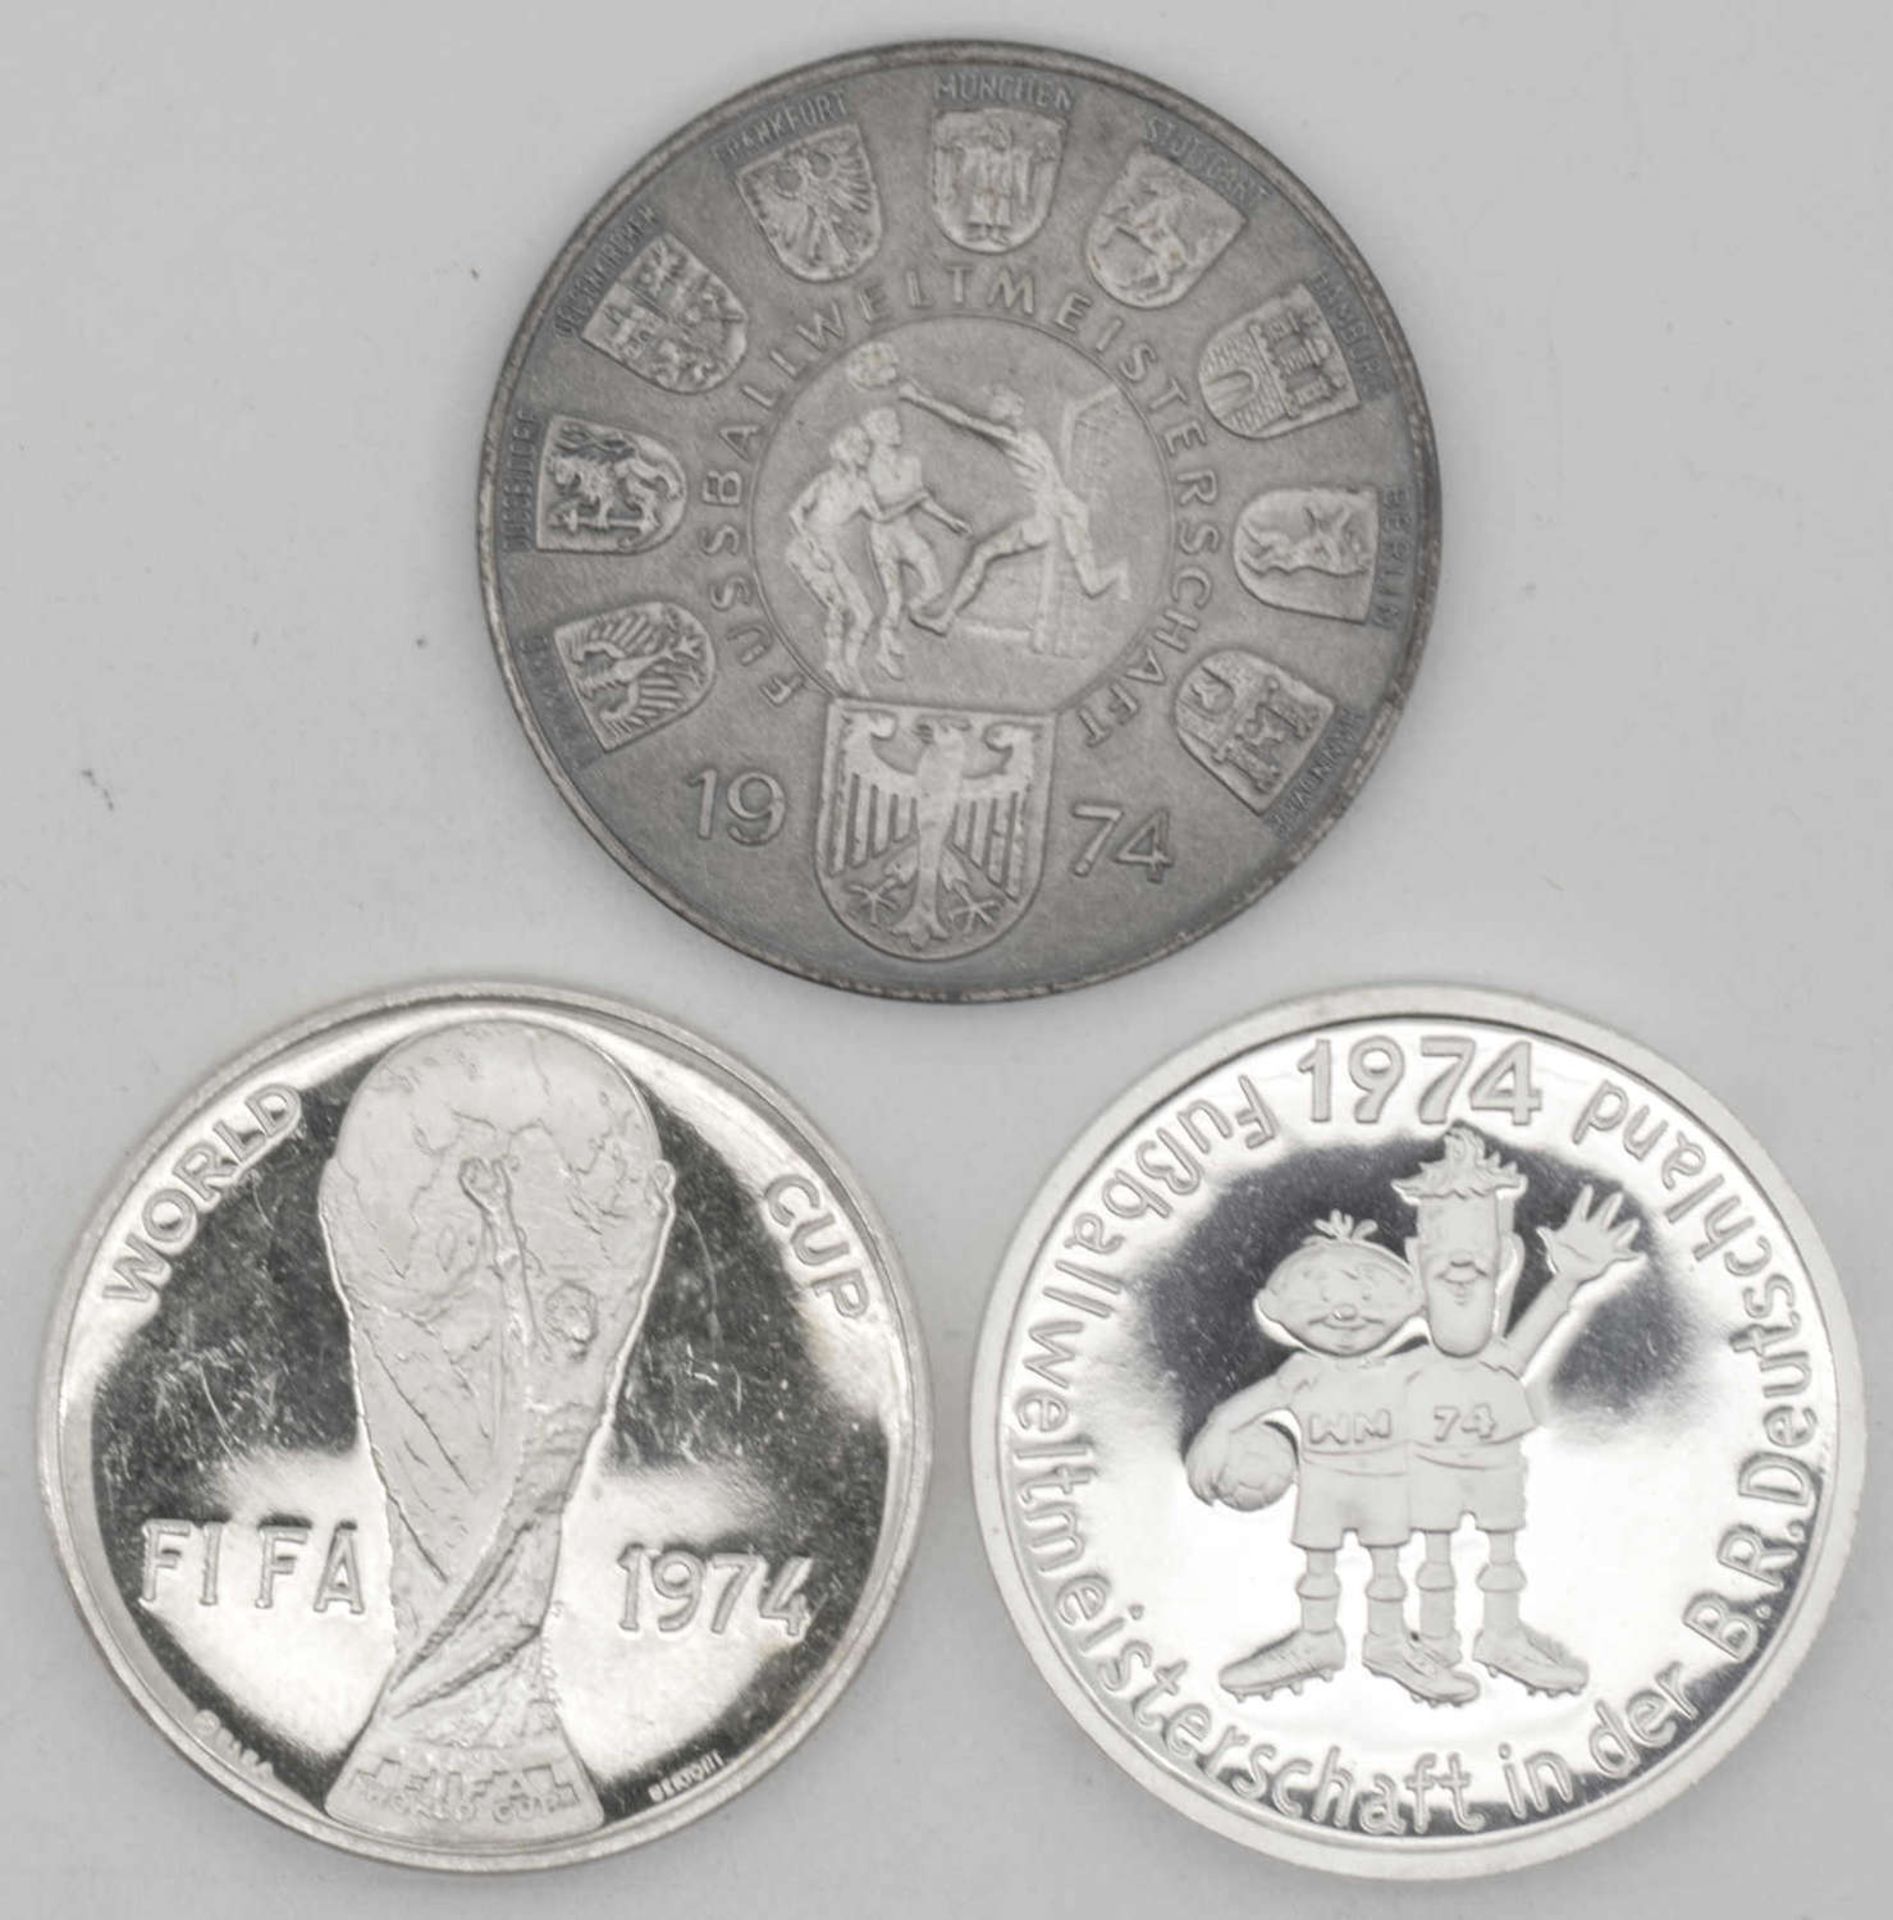 Lot Silber - Medaillen die Fußball - WM 1970 und 1974 betreffend. Gesamtgewicht: ca. 40 g. Qualität: